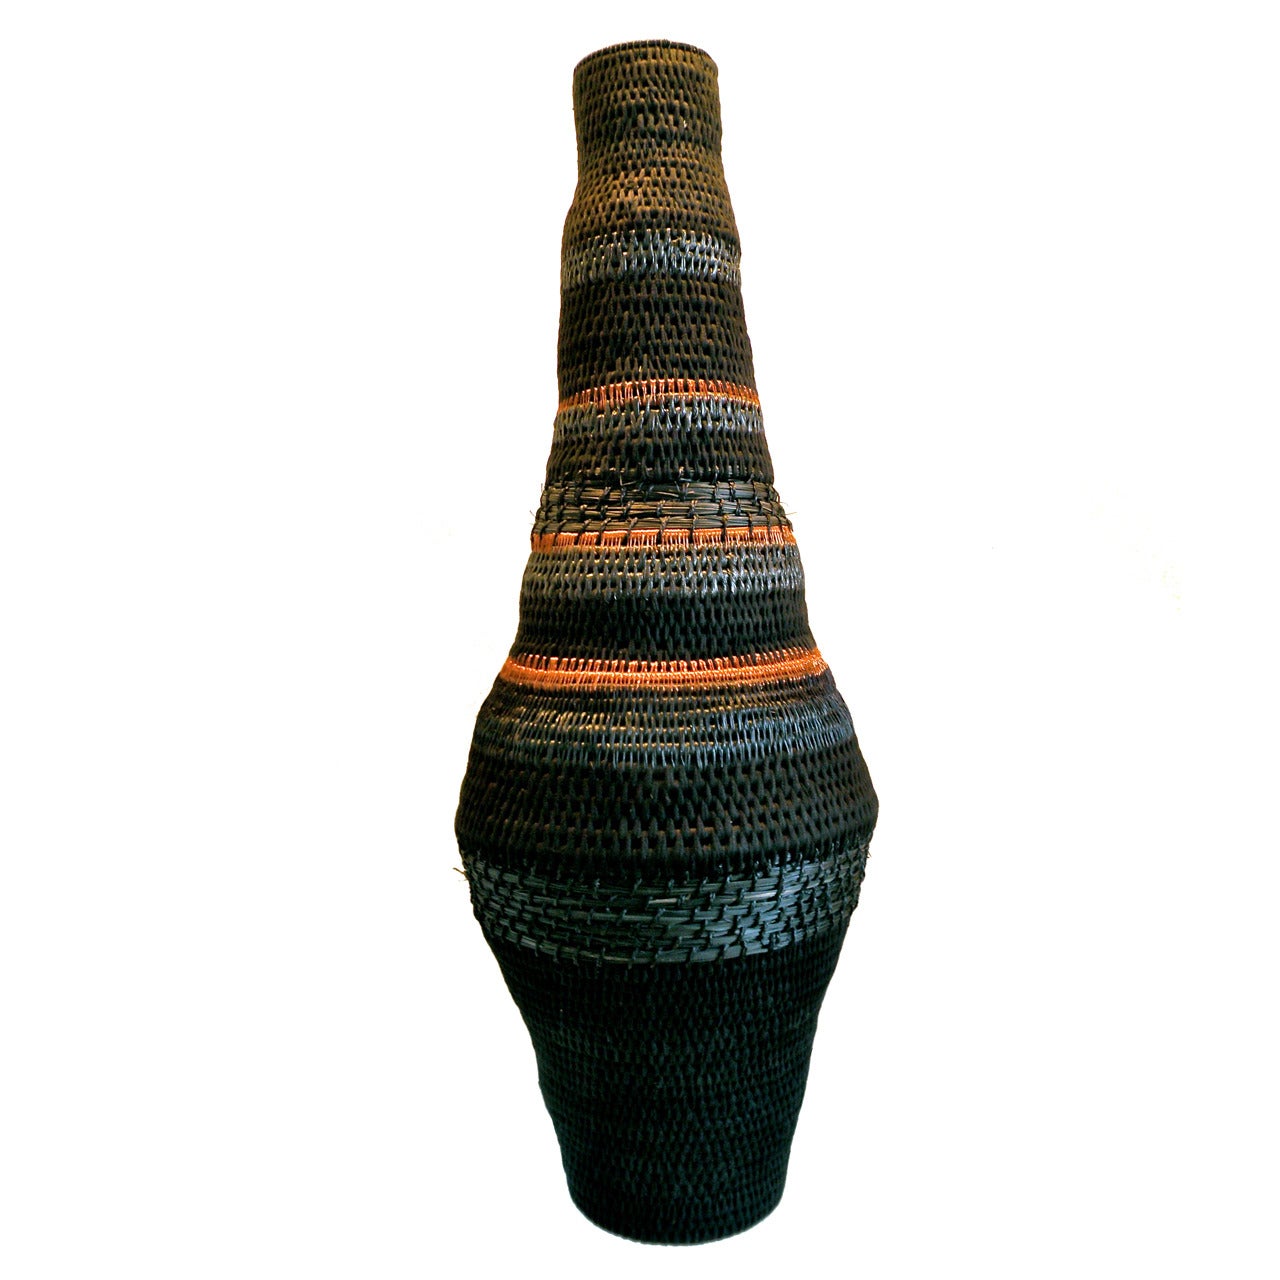 Große gewebte Skulpturale Vase